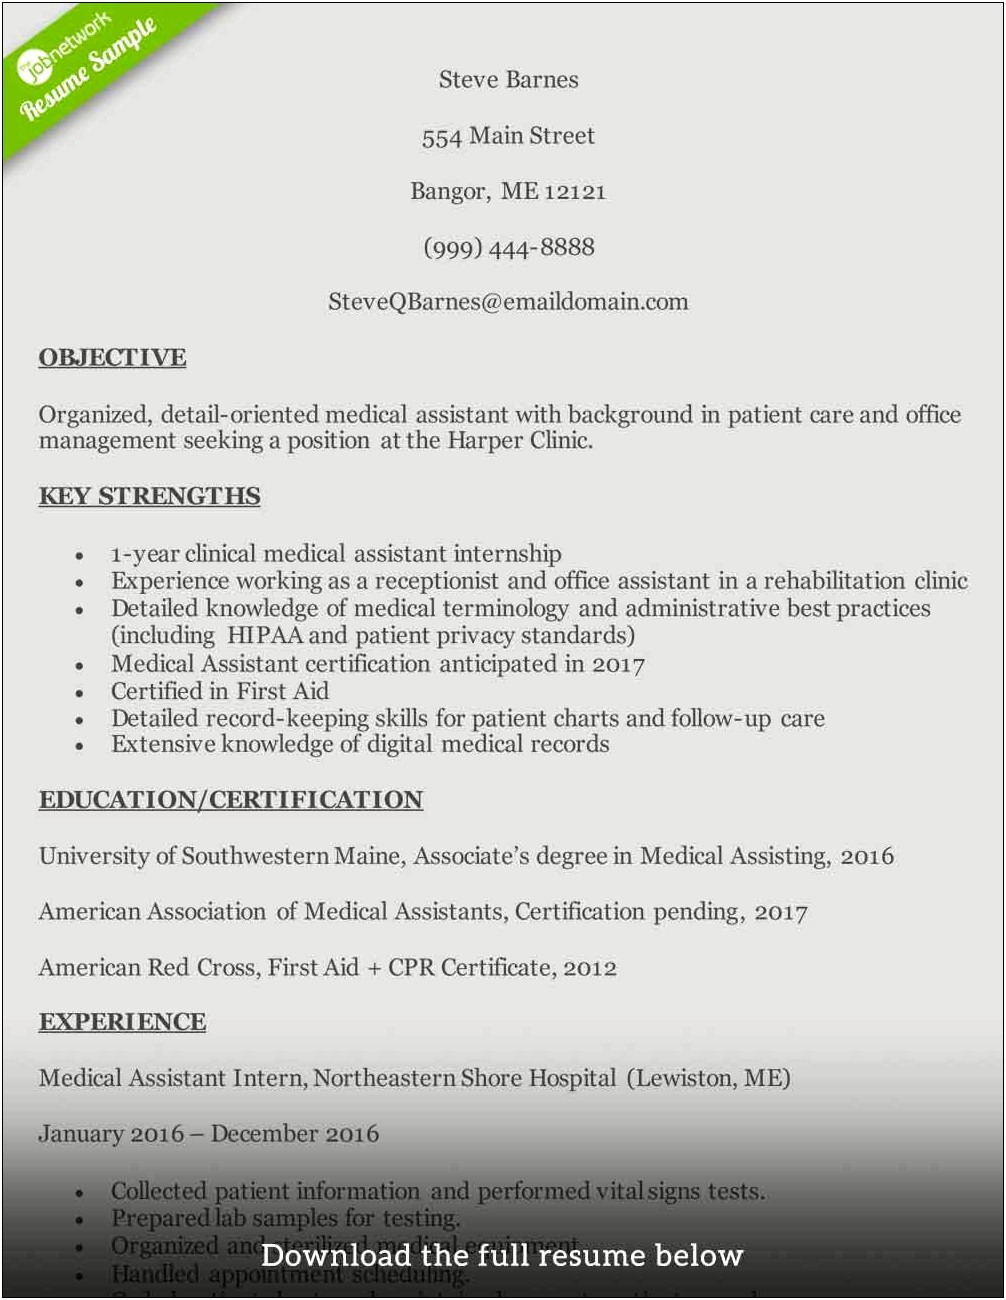 Medical Receptionist Resume Sample 2012